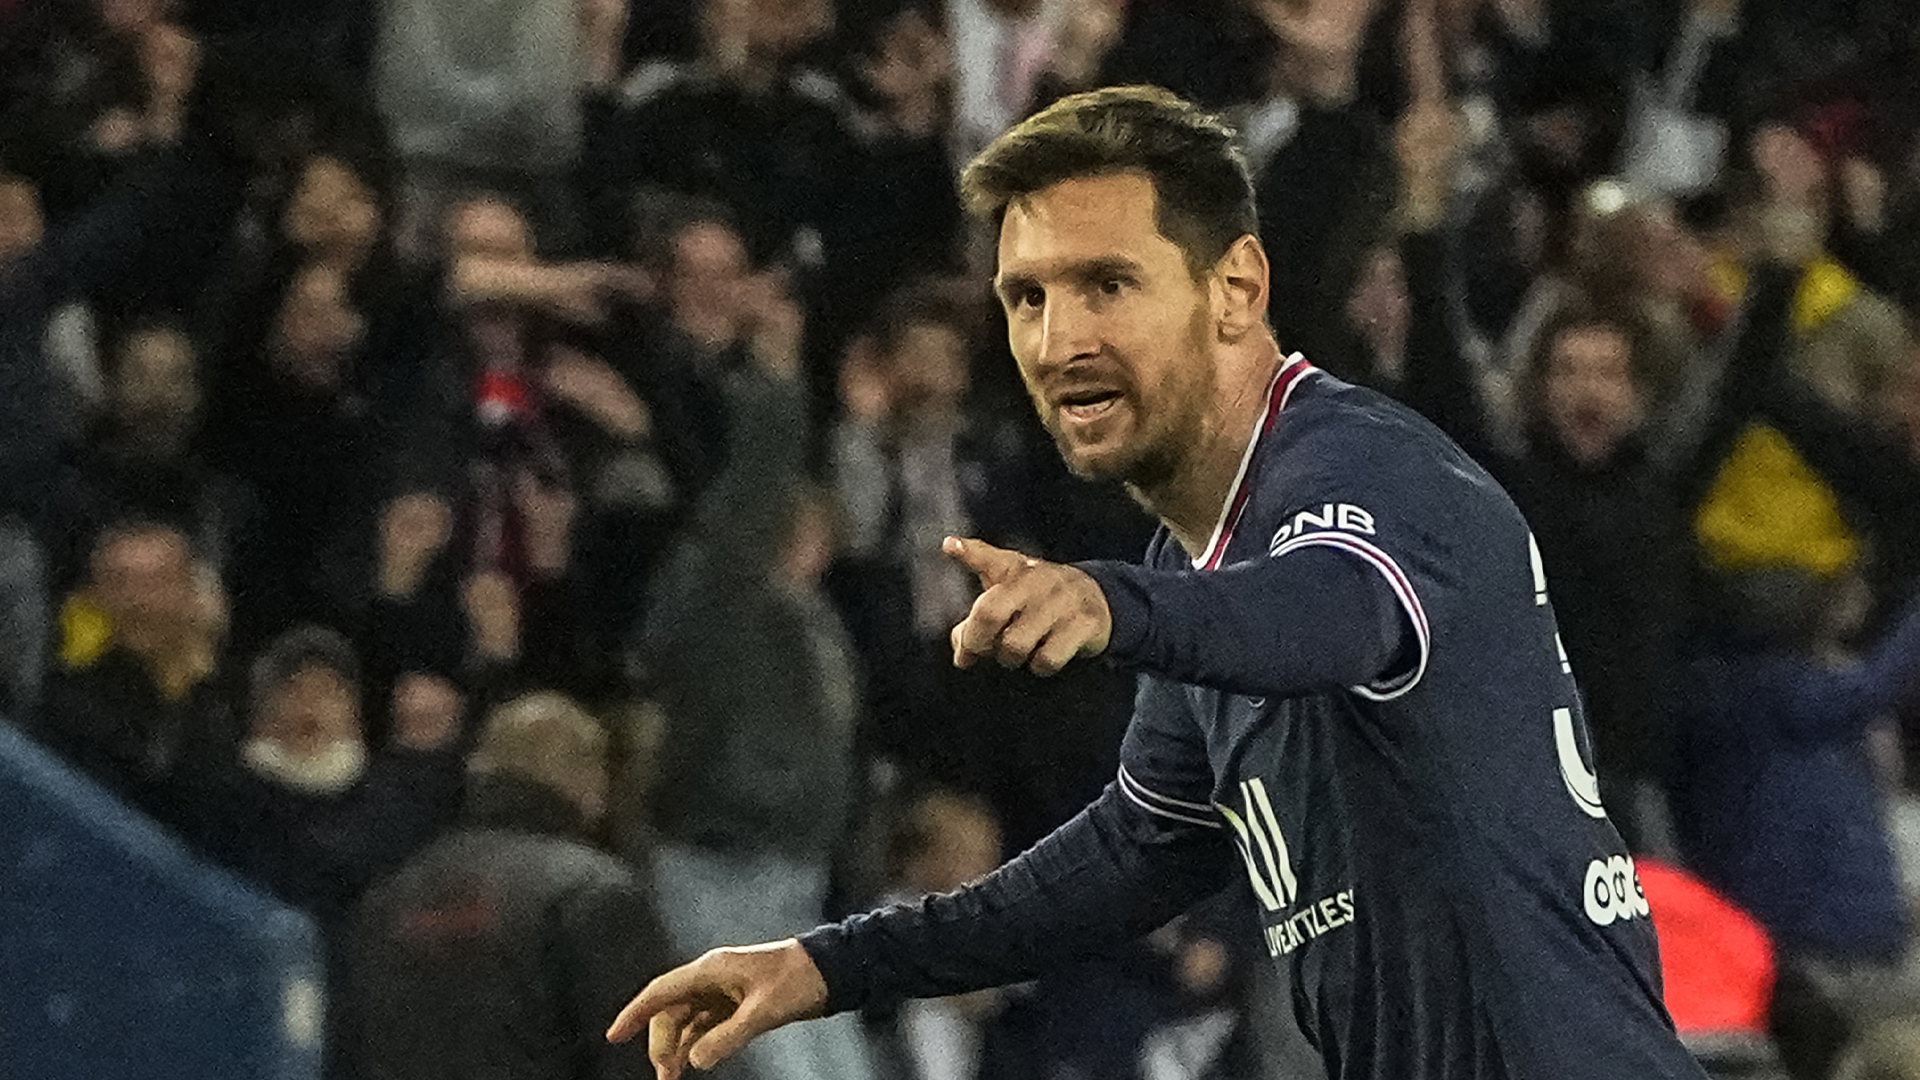 Lionel Messi aurait décidé de se porter acquéreur de 35 % des parts de l’Inter Miami et rejoindrait les rangs de l’équipe en 2023, selon DirecTV Sports.